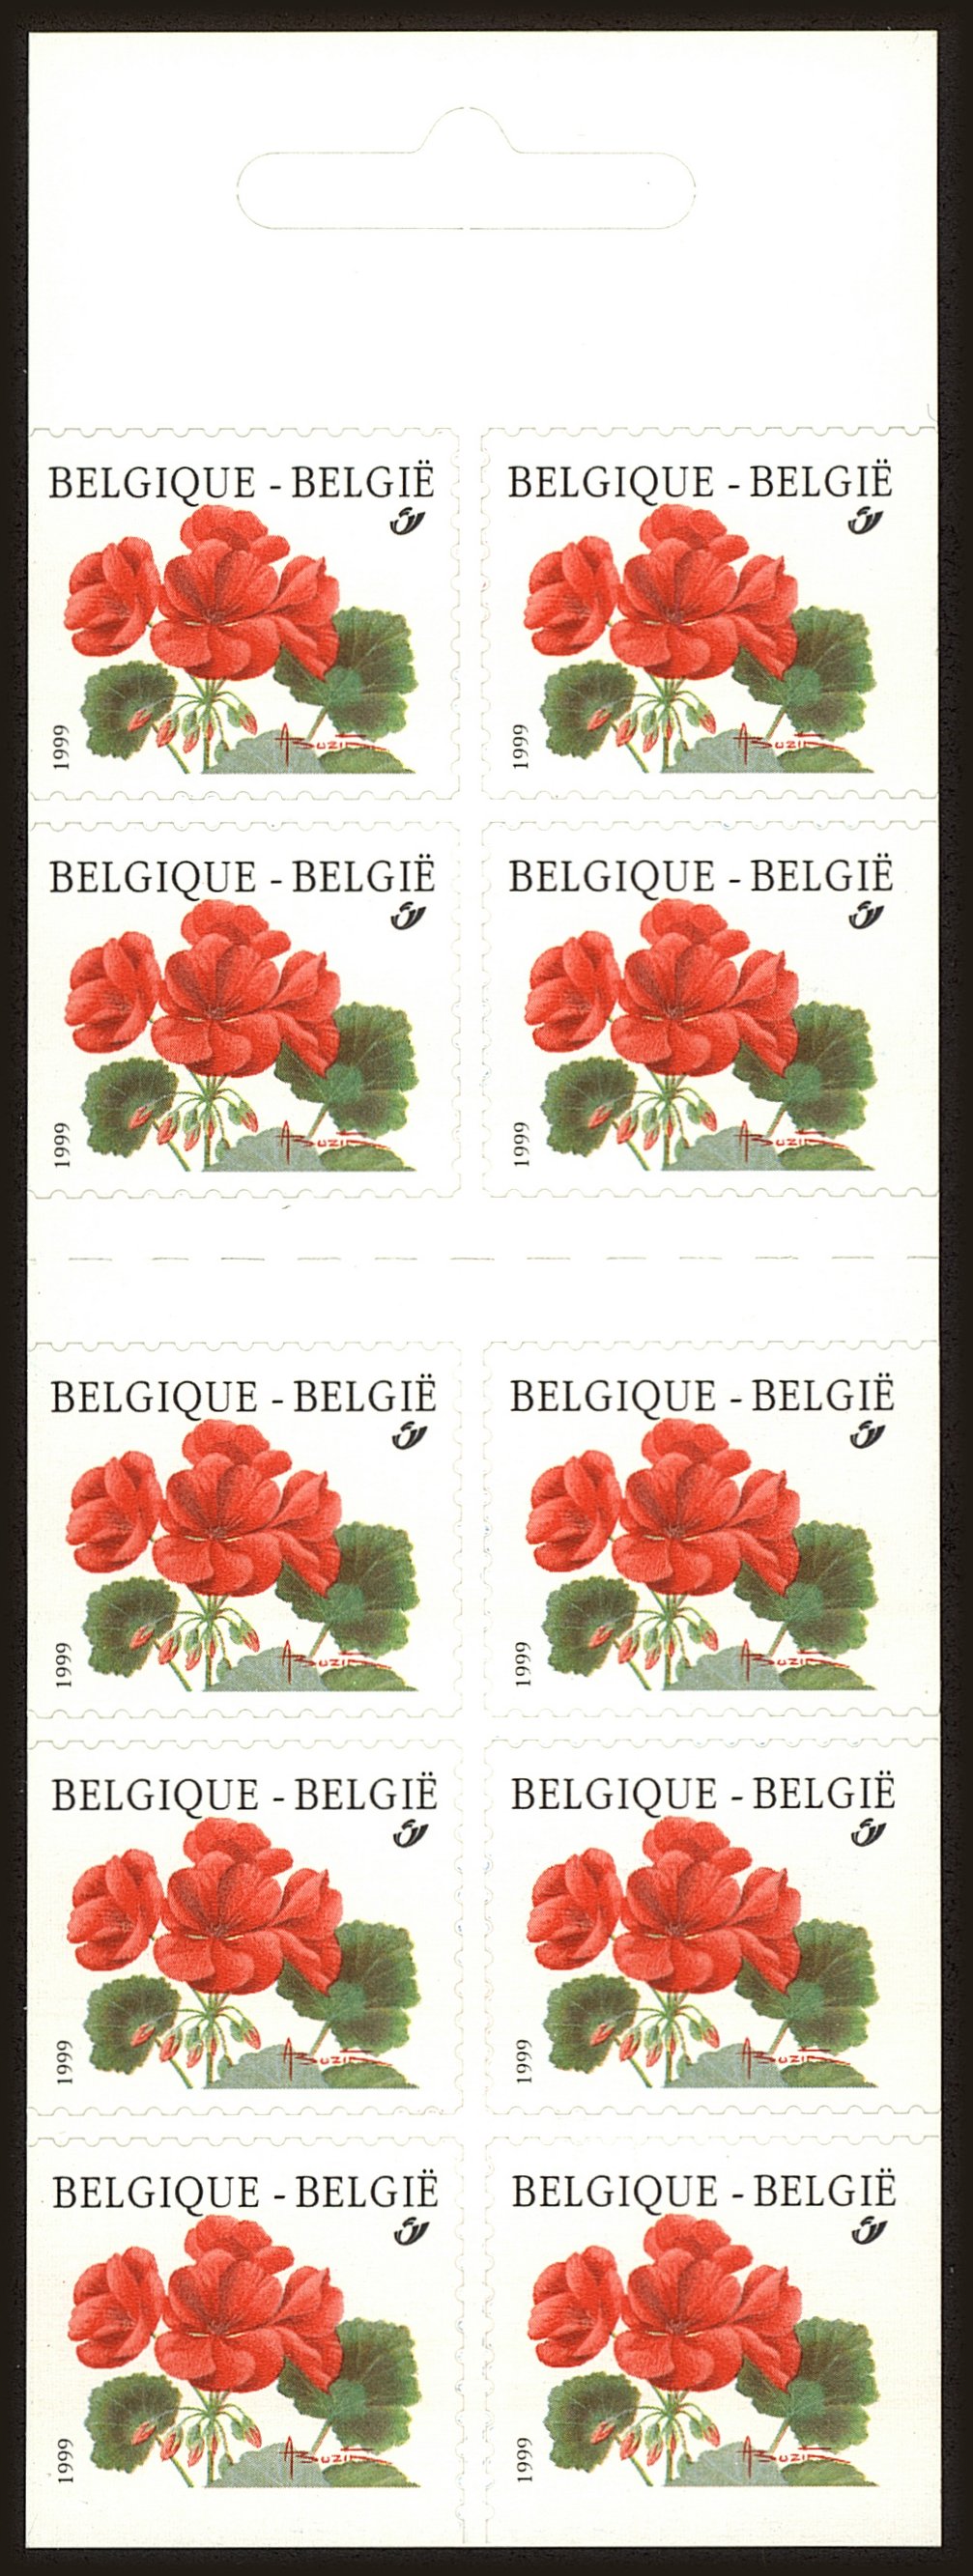 Front view of Belgium 1772 collectors stamp